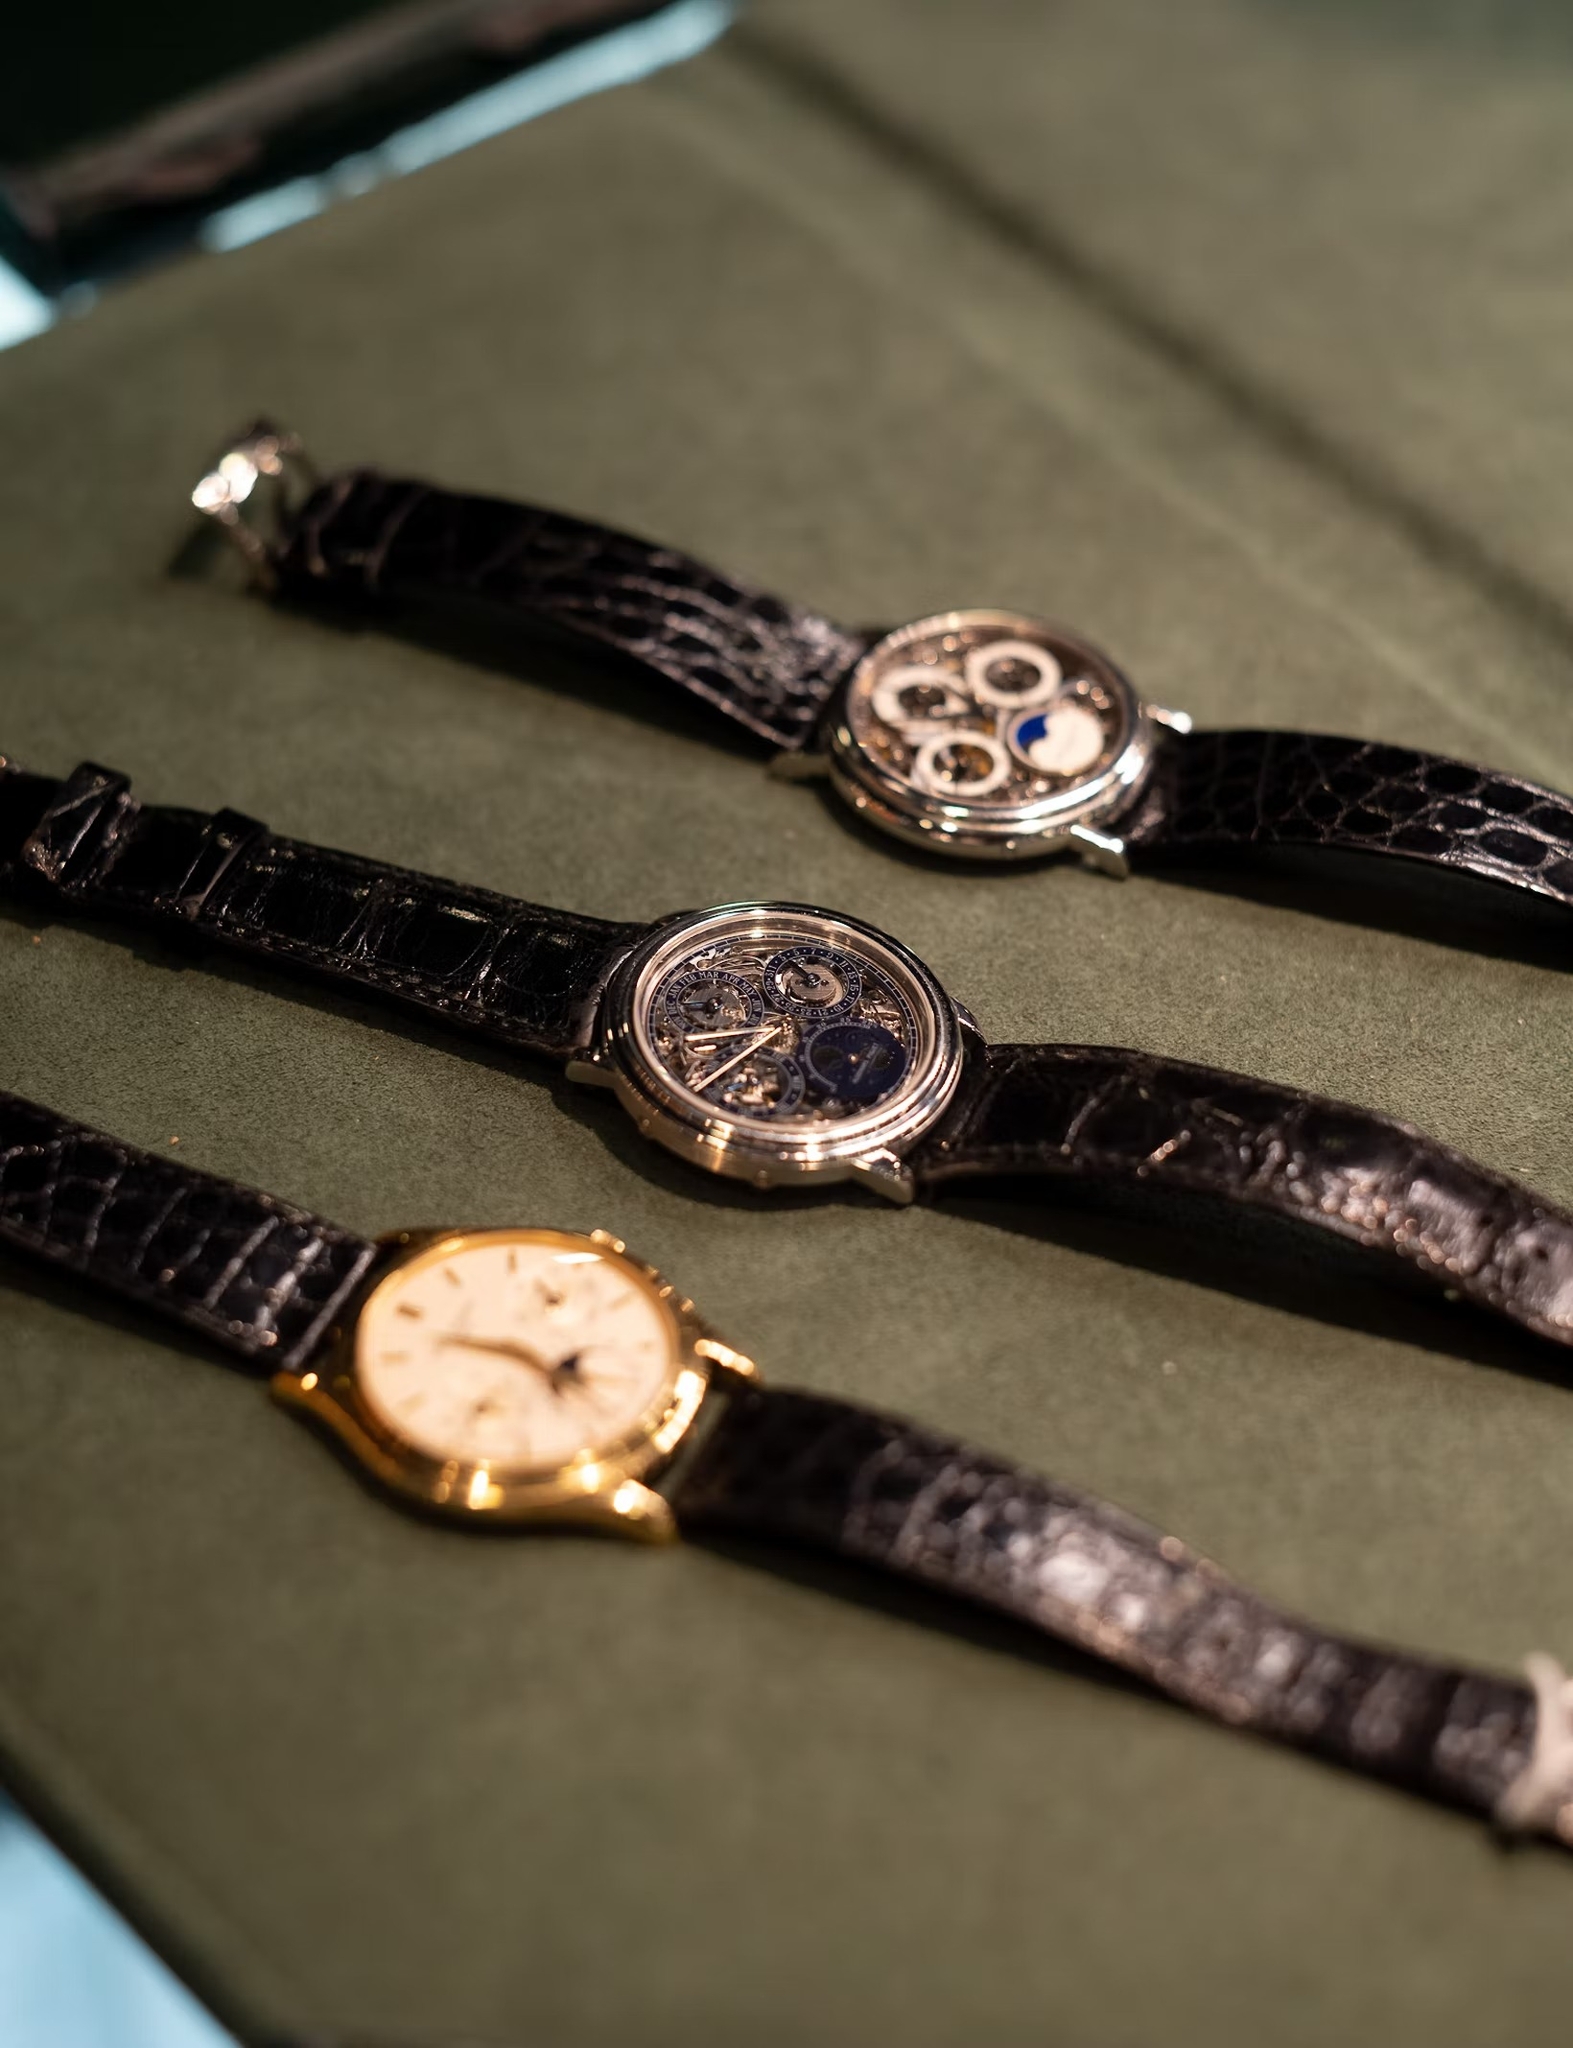 Tuyệt Chiêu “Chạy” Siêu Chính Xác Của Đồng Hồ Rolex: Superlative Chronometer Lên Dây